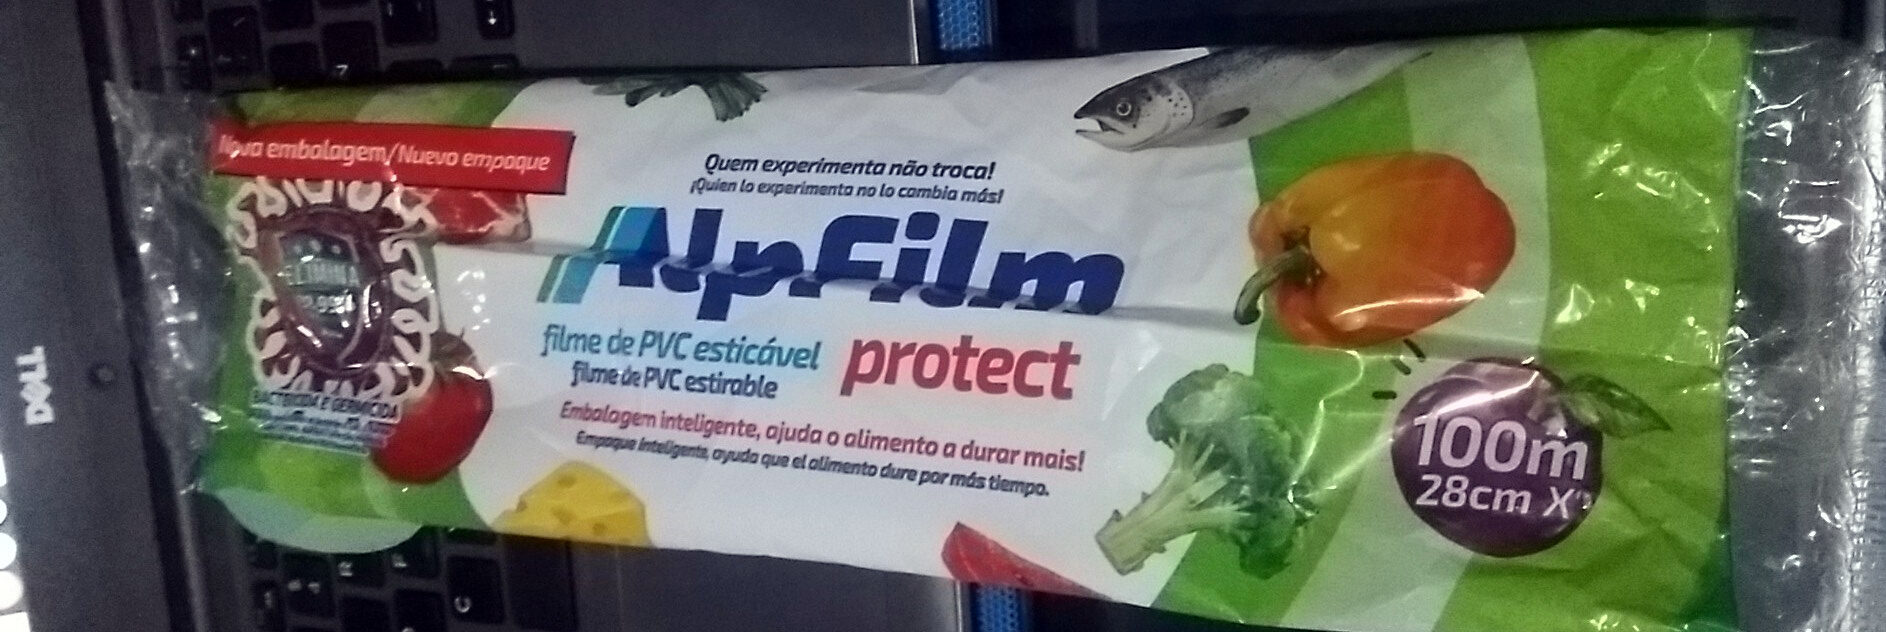 AlpFilm Protect Clássico - Produit - pt